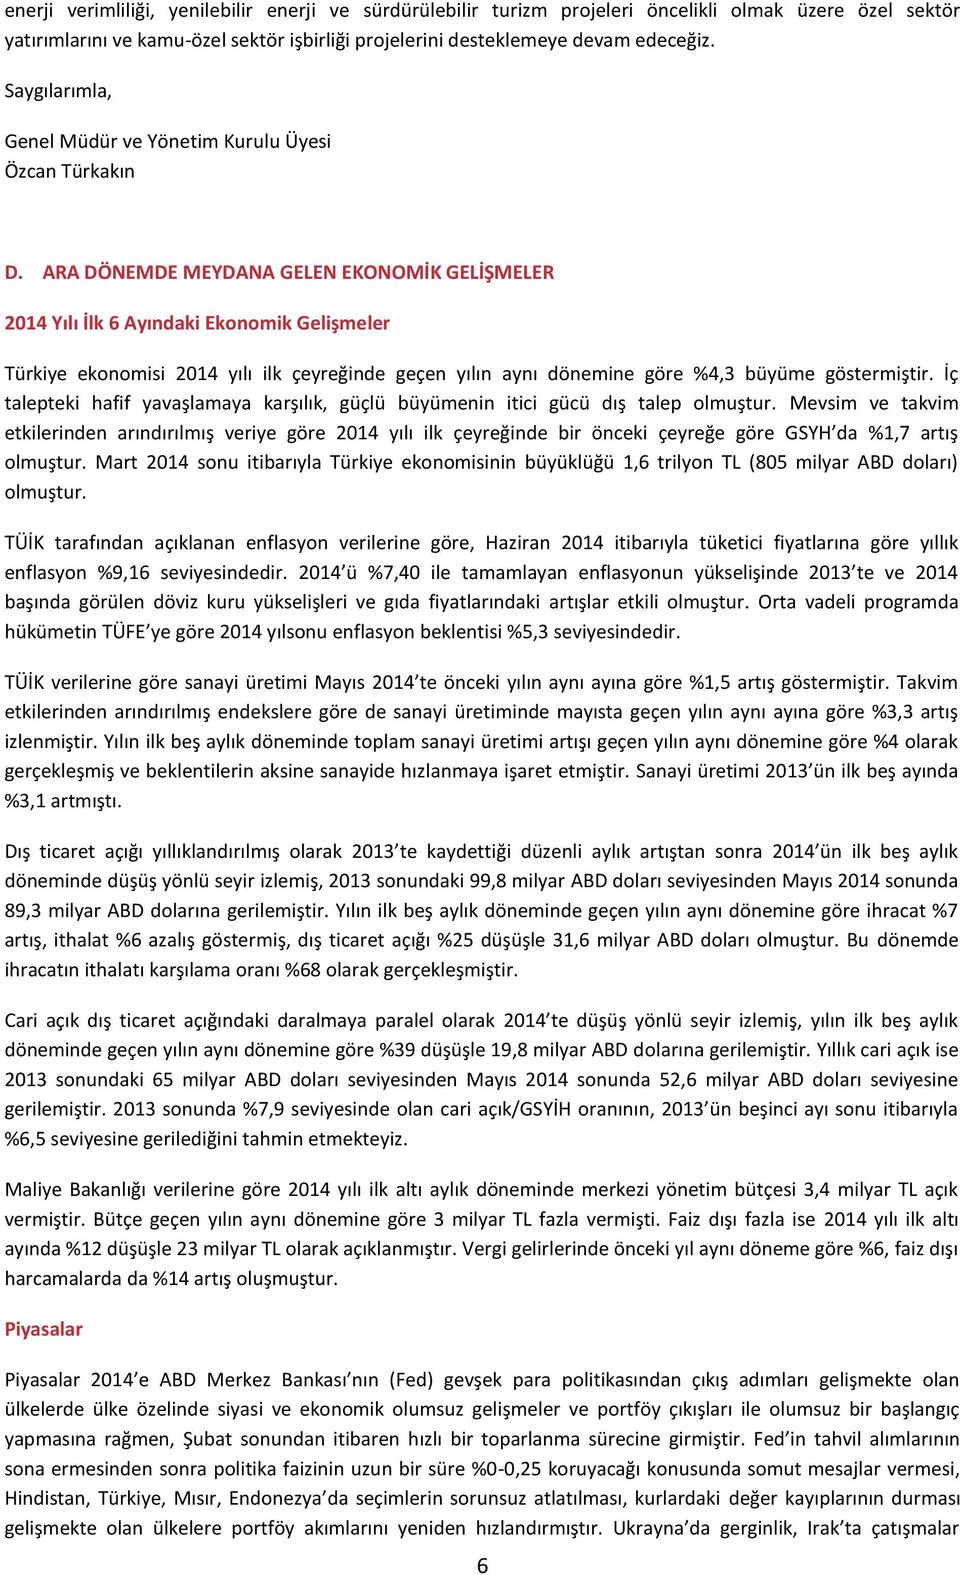 ARA DÖNEMDE MEYDANA GELEN EKONOMİK GELİŞMELER 2014 Yılı İlk 6 Ayındaki Ekonomik Gelişmeler Türkiye ekonomisi 2014 yılı ilk çeyreğinde geçen yılın aynı dönemine göre %4,3 büyüme göstermiştir.